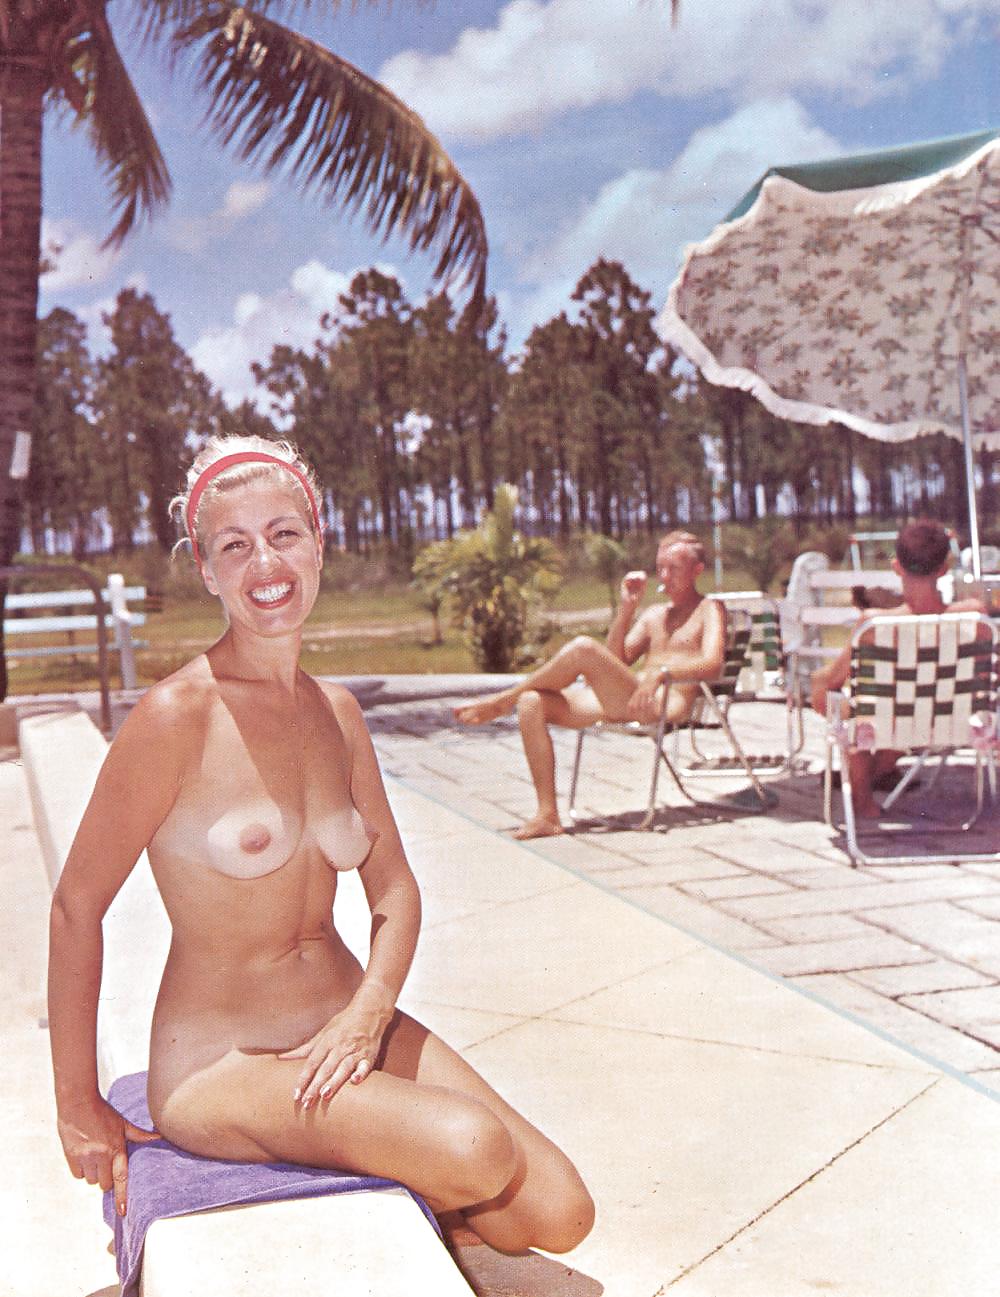 Nudo e senza vergogna - rivista nudista d'epoca
 #24241798